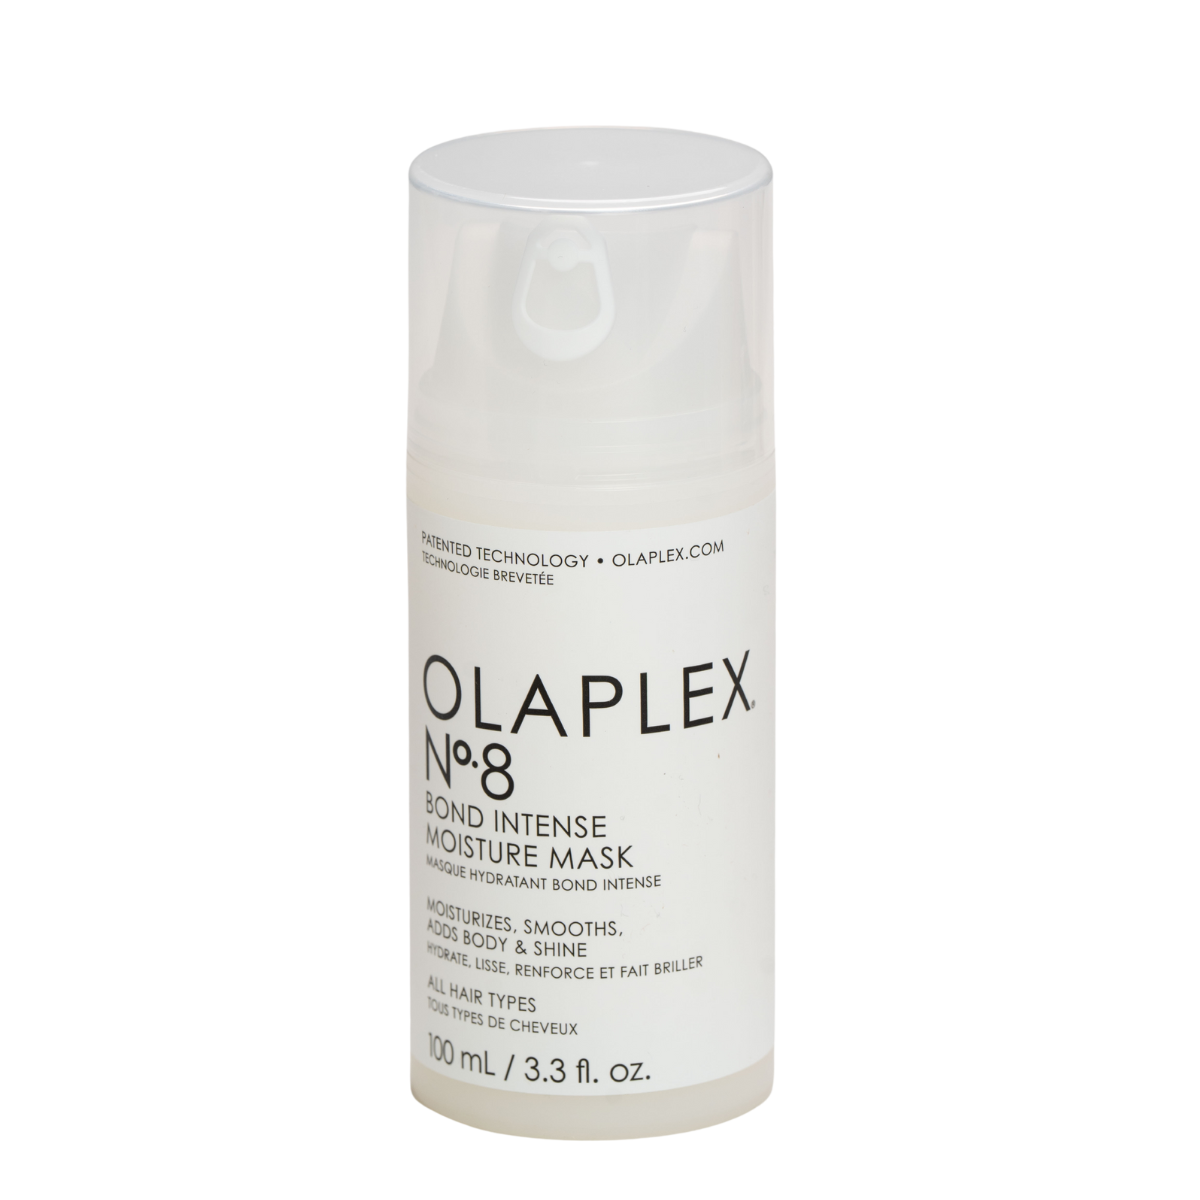 אולפלקס מס` 8 מסכת לחות אינטנסיבית 100 מ"ל OLAPLEX